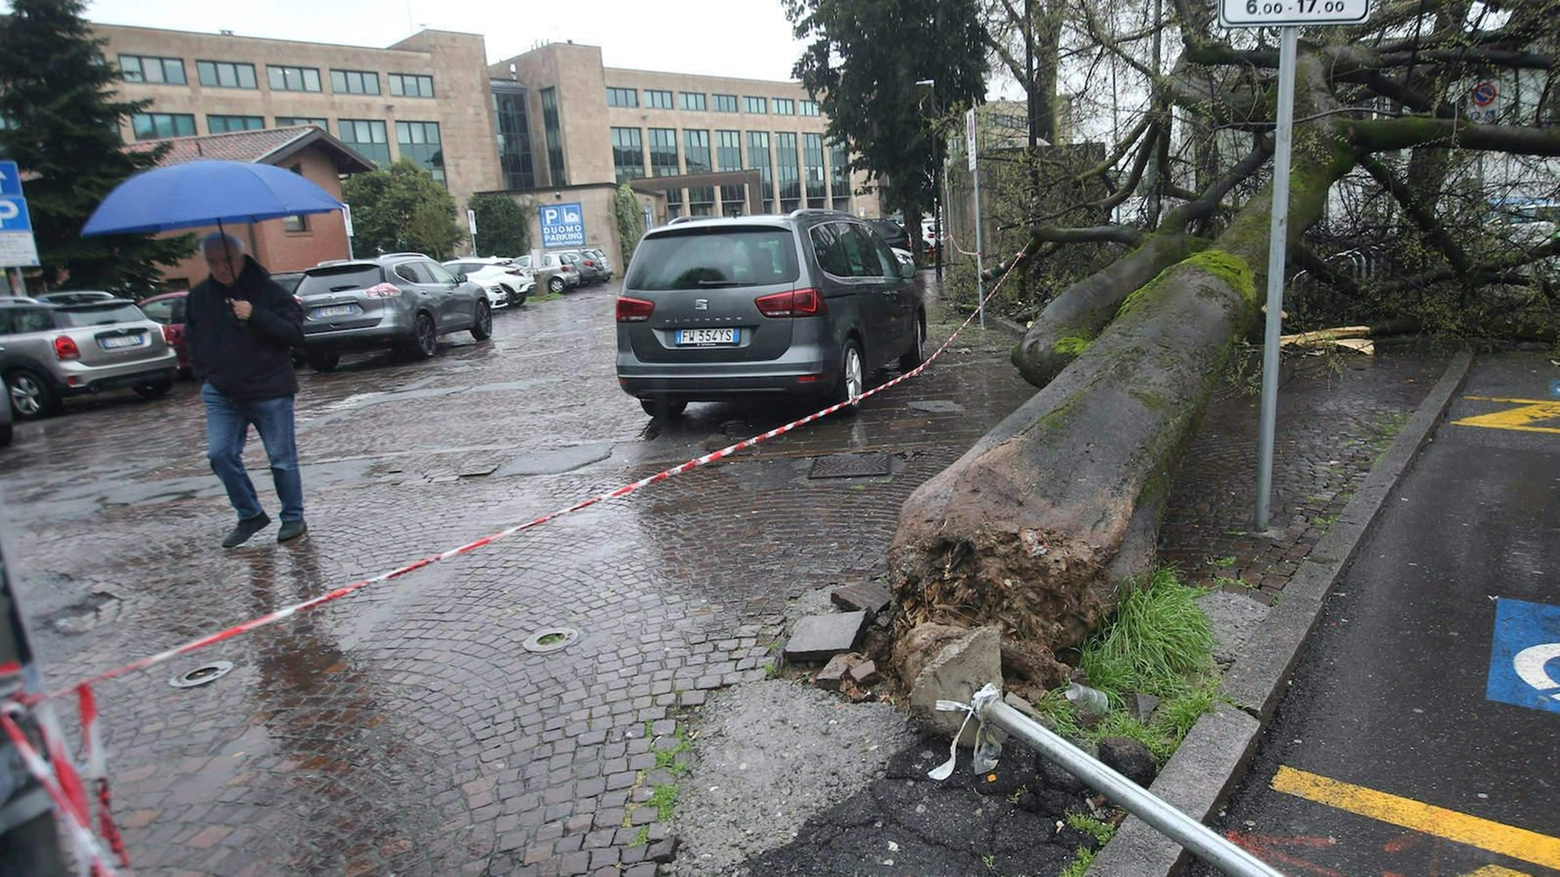 Un albero di alto fusto cade improvvisamente a Monza, danneggiando un'auto ma senza ferire persone. Intervengono polizia locale e vigili del fuoco per rimuoverlo. Assessora alla Viabilità presente.